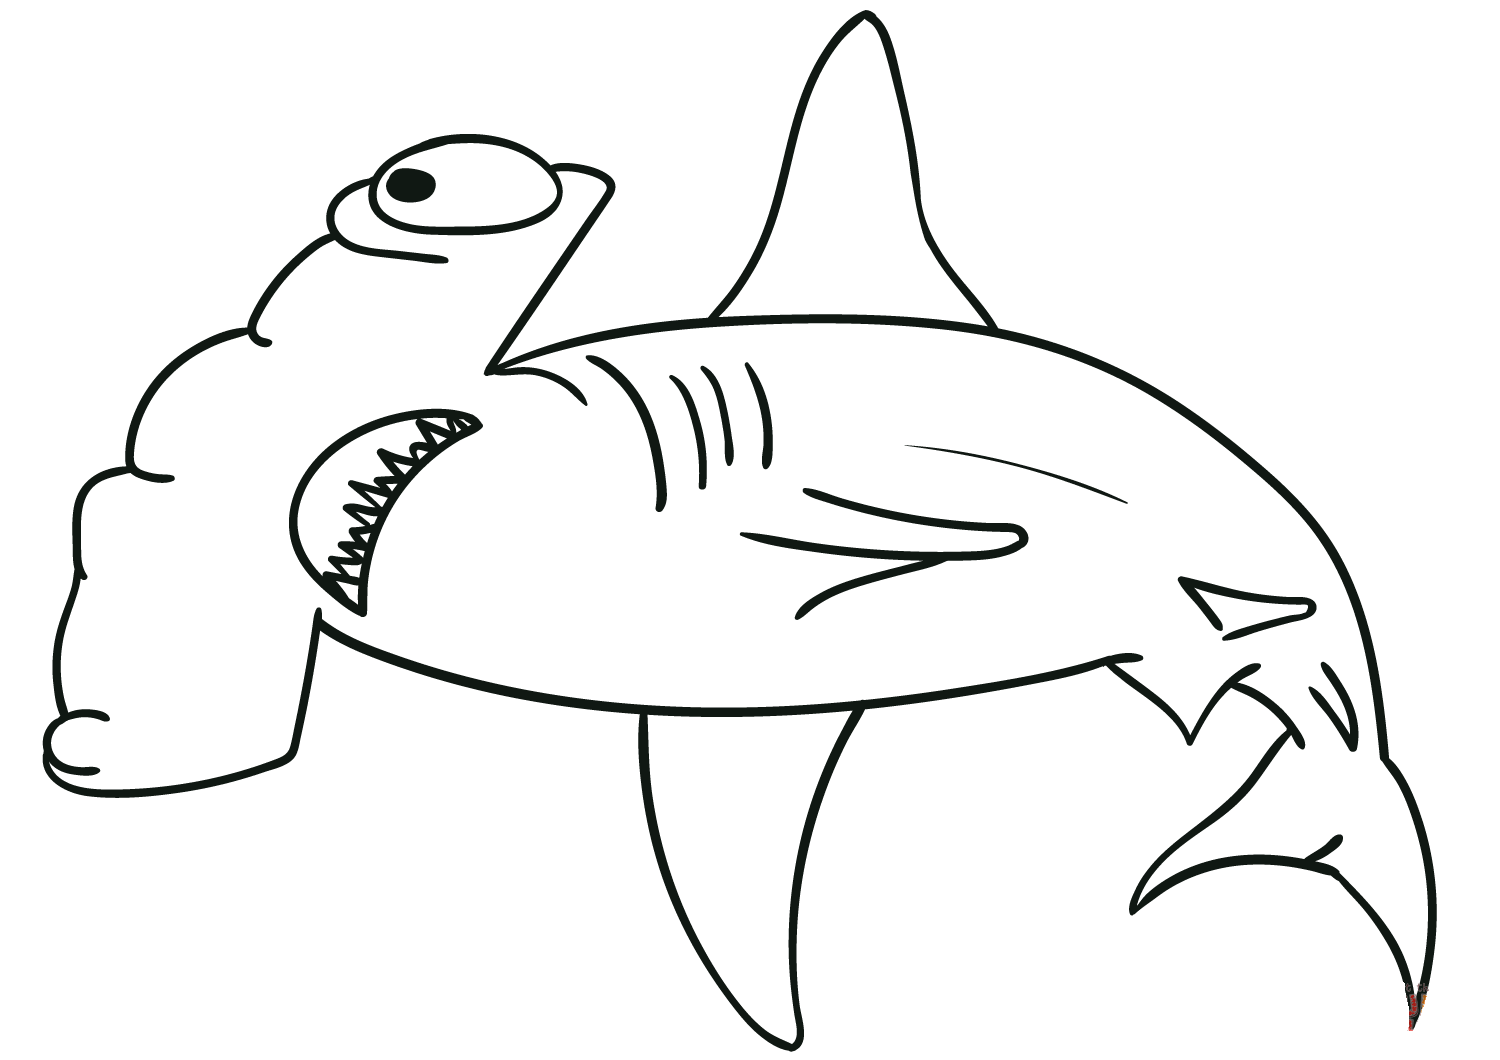 Lo squalo martello ha una pagina da colorare a forma di martello